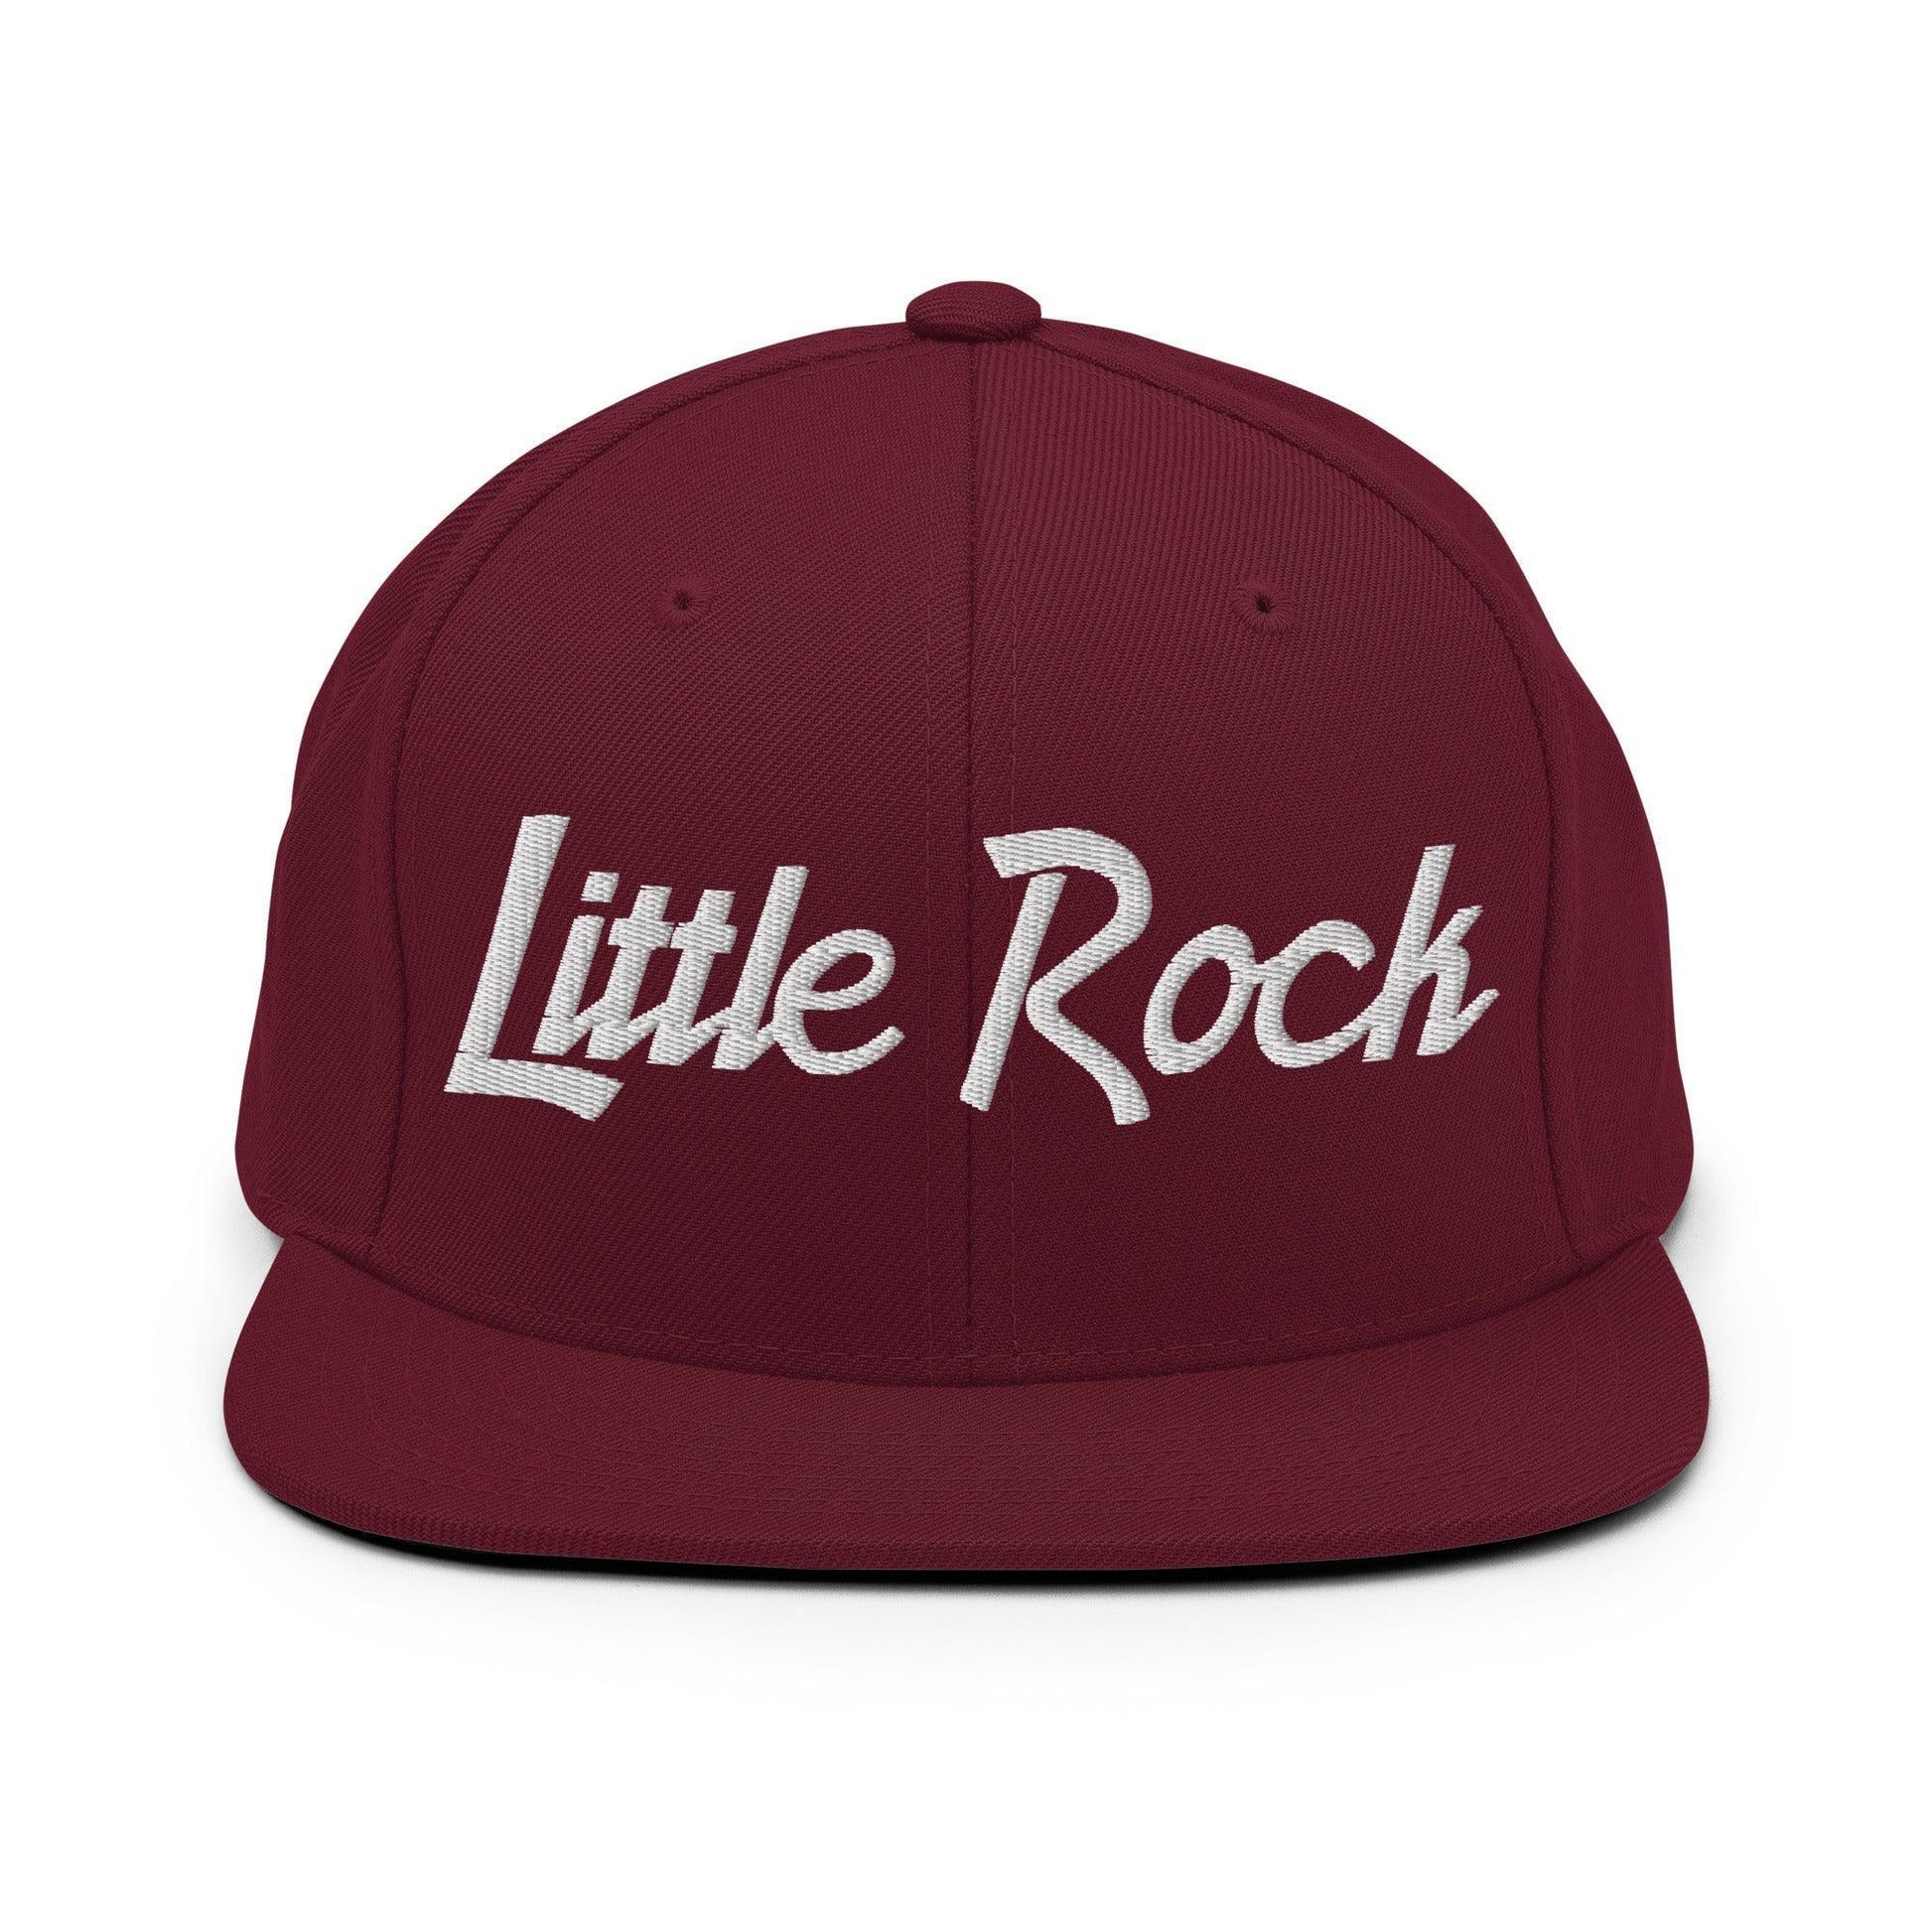 Little Rock Script Snapback Hat Maroon